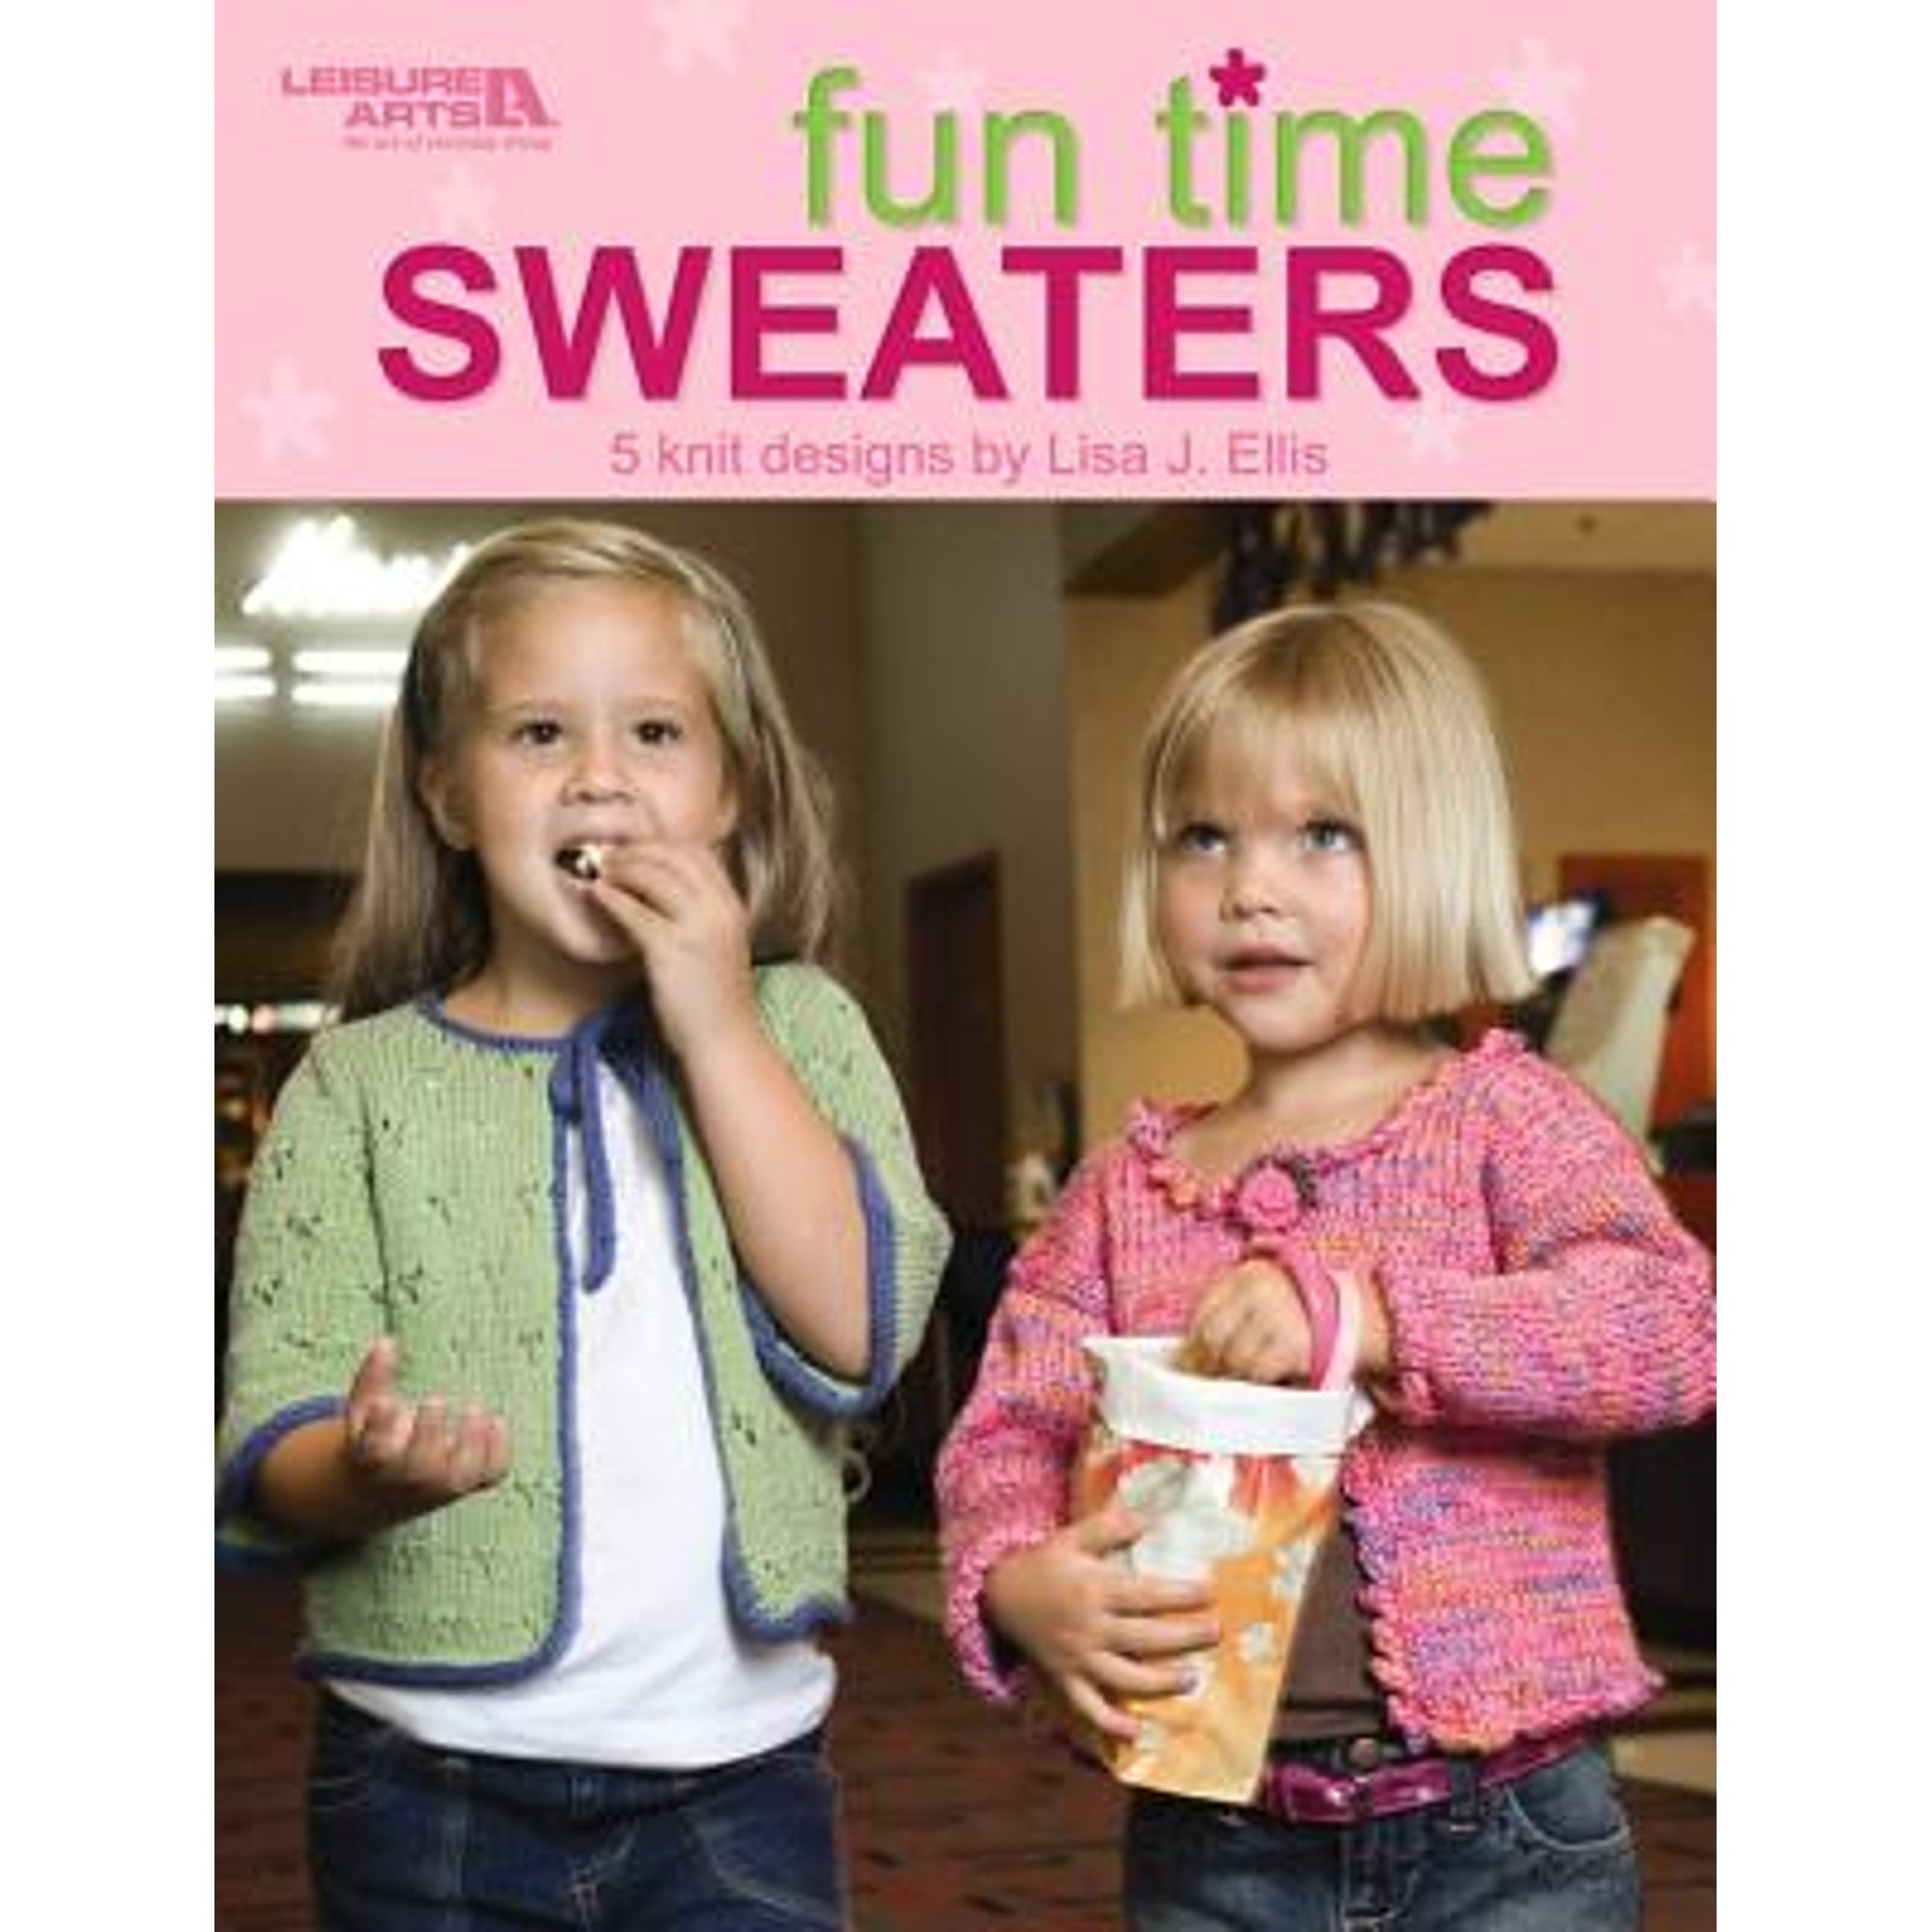 Pre-Owned Fun Time Sweaters (Leisure Arts #4450) (Paperback 9781601407047) by Lisa J Ellis, Lisa J Ellis